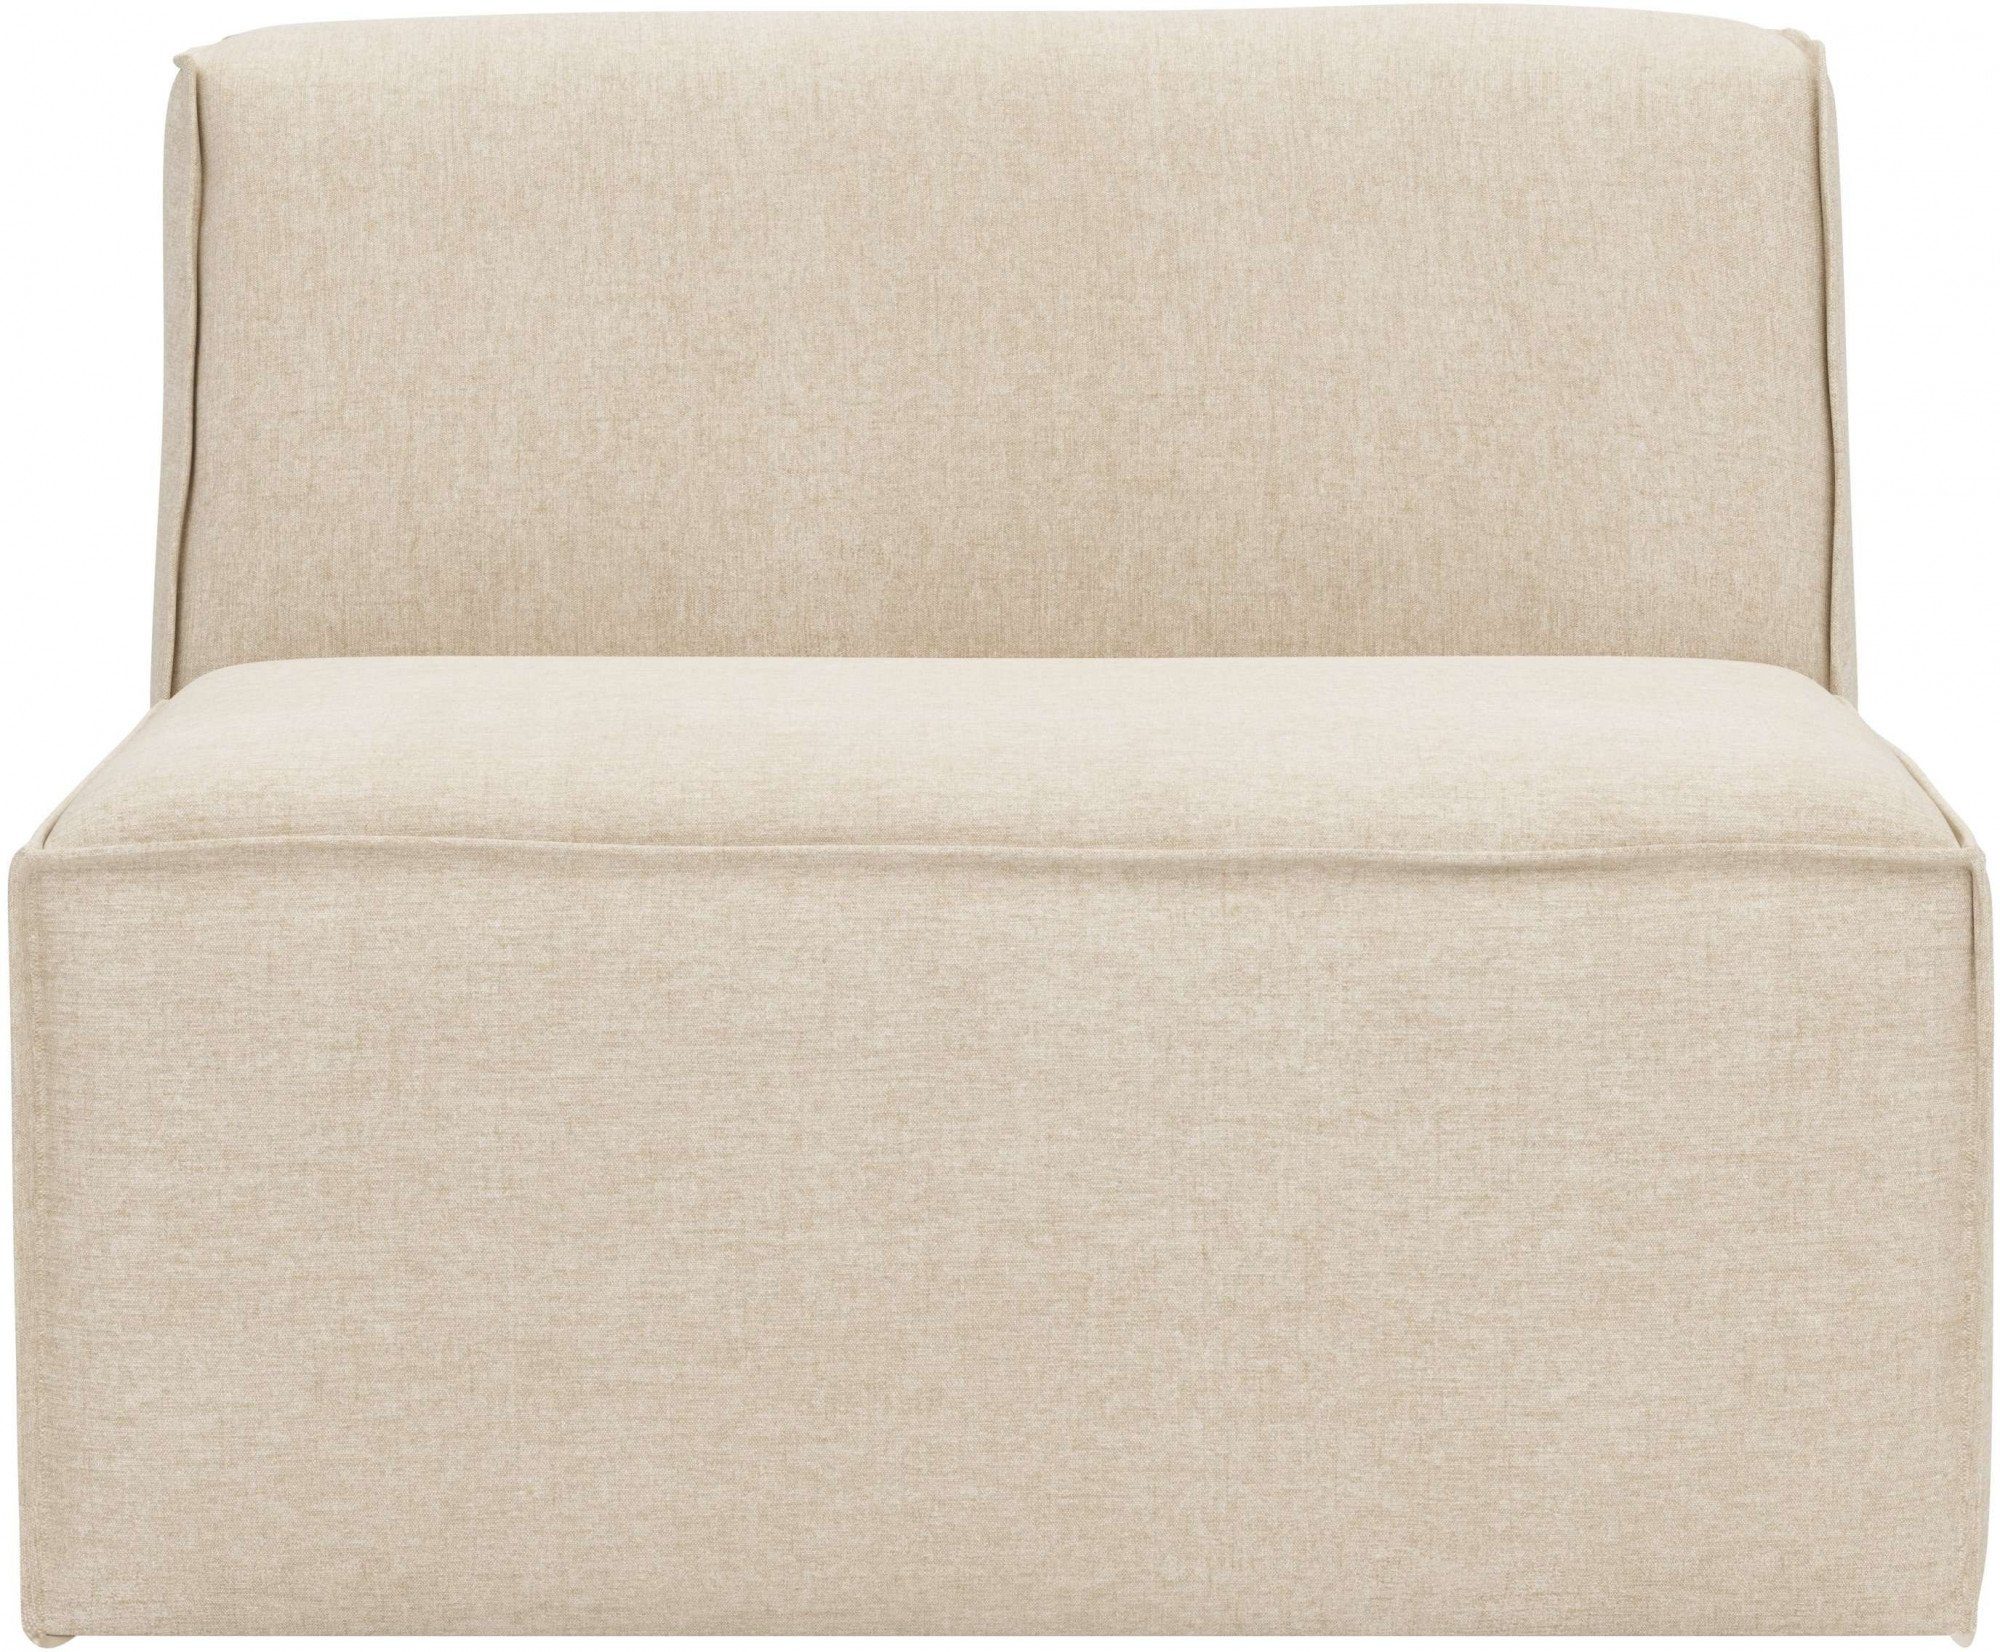 RAUM.ID Sofa-Mittelelement Norvid, Modulen große modular, Taschenfederkern, Auswahl an natural mit